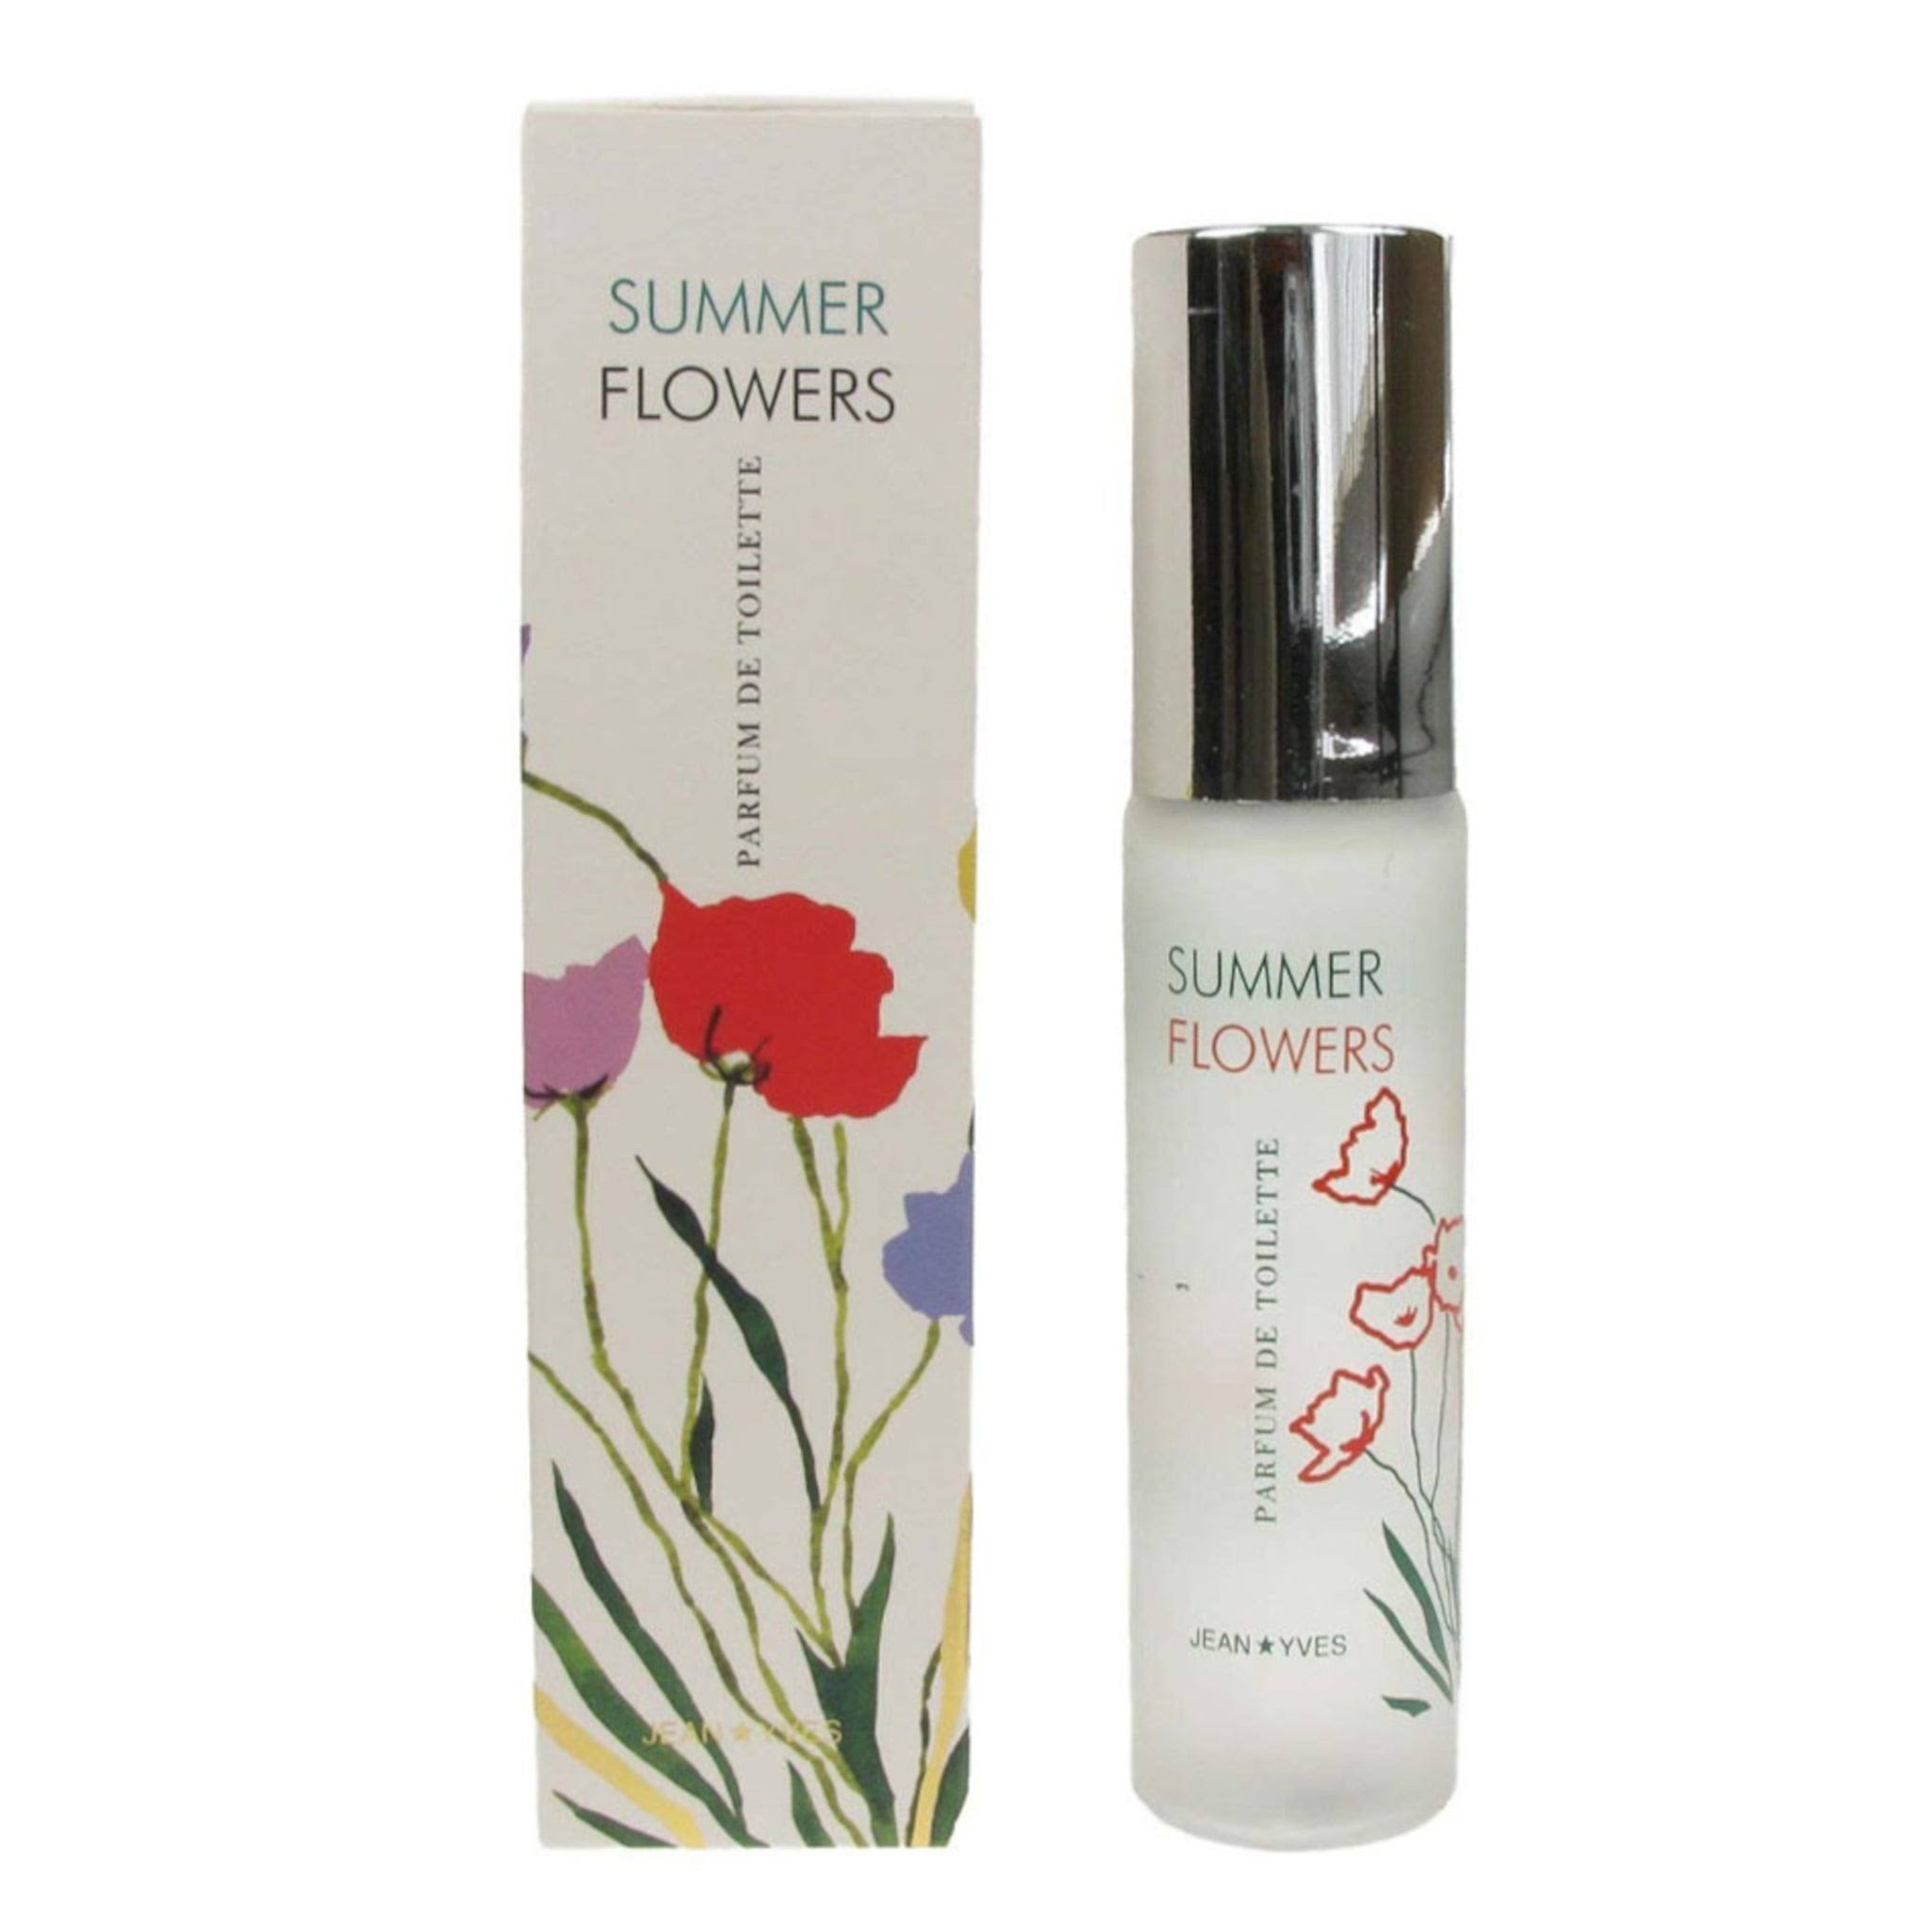 Summer Flowers Parfum de Toillette Spray Fragrance